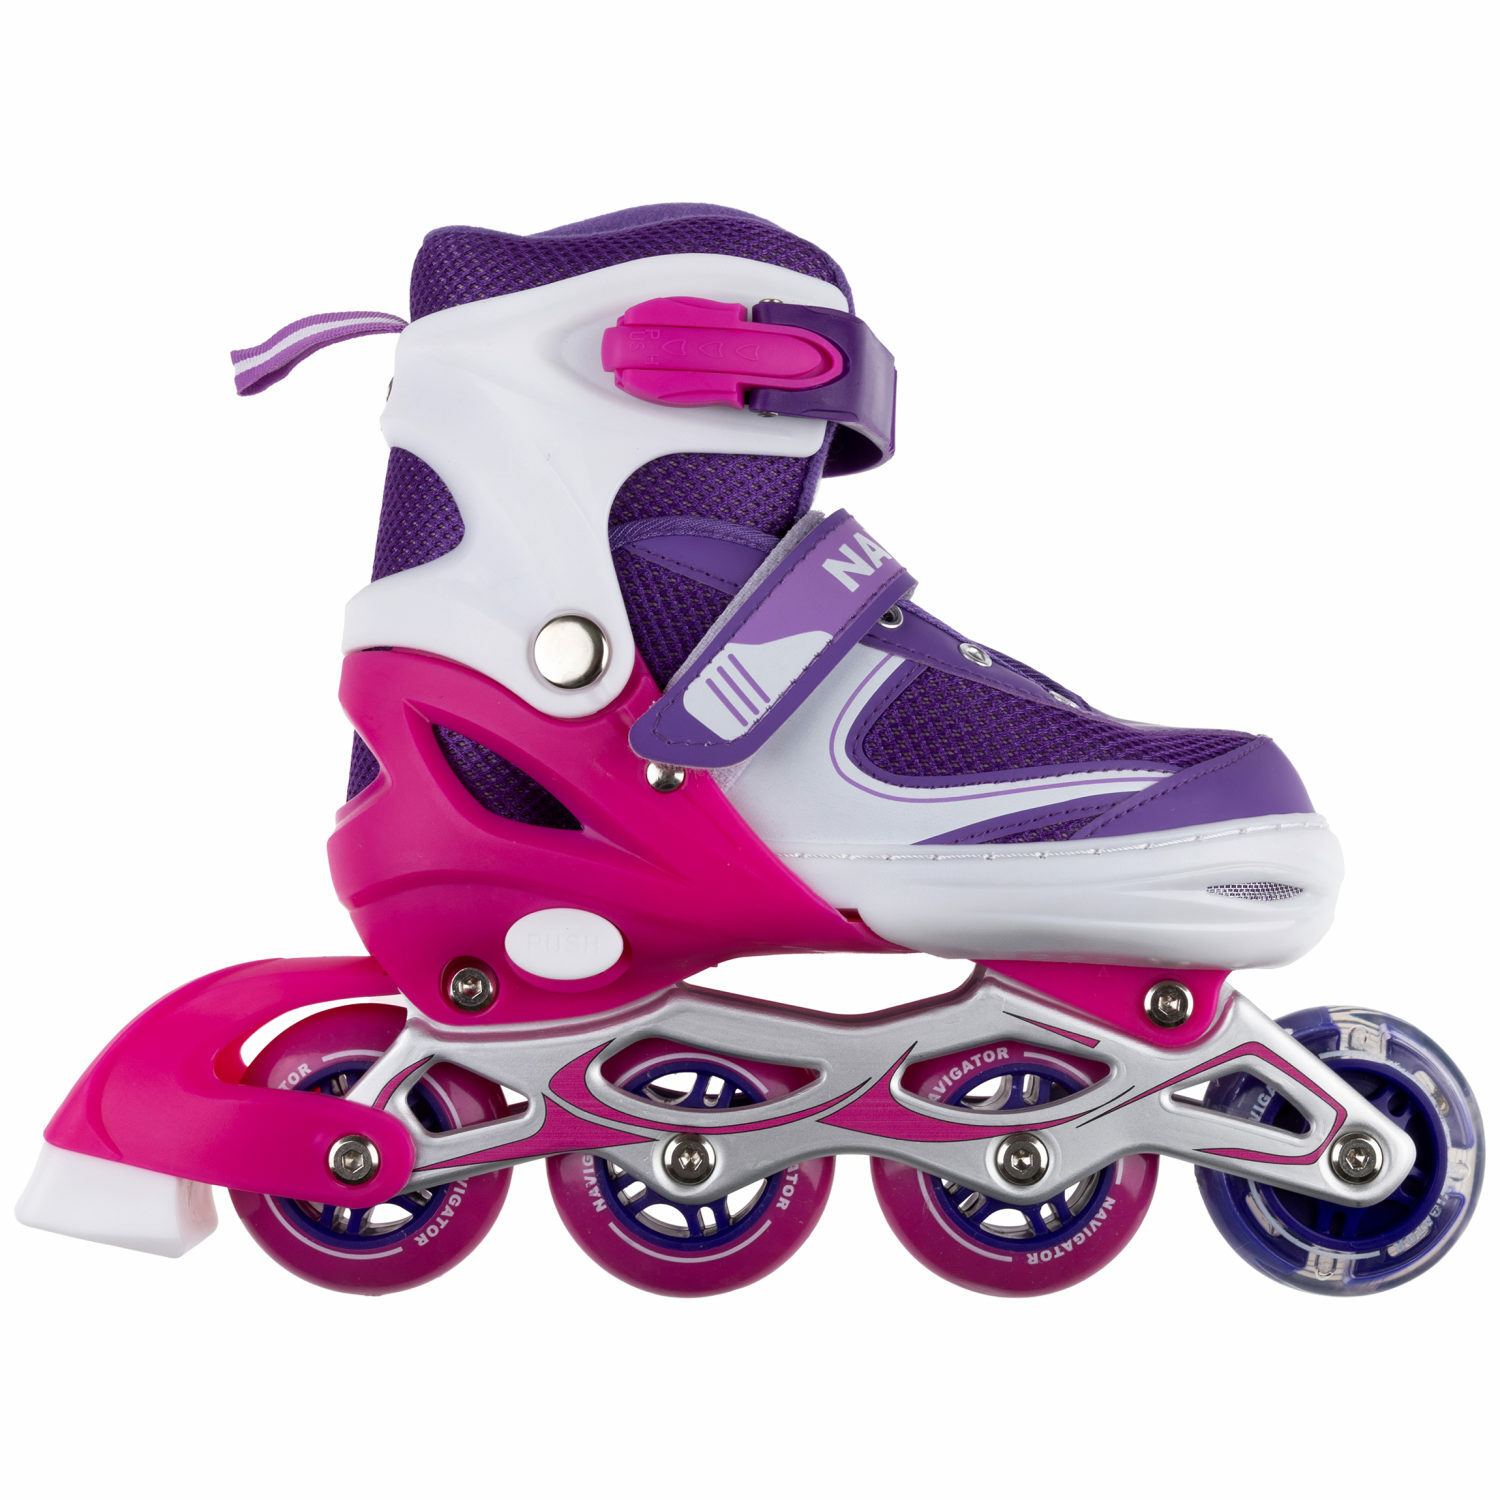 Ролики Navigator детские раздвижные 30 - 33 размер с защитой и шлемом розовый - фото 7